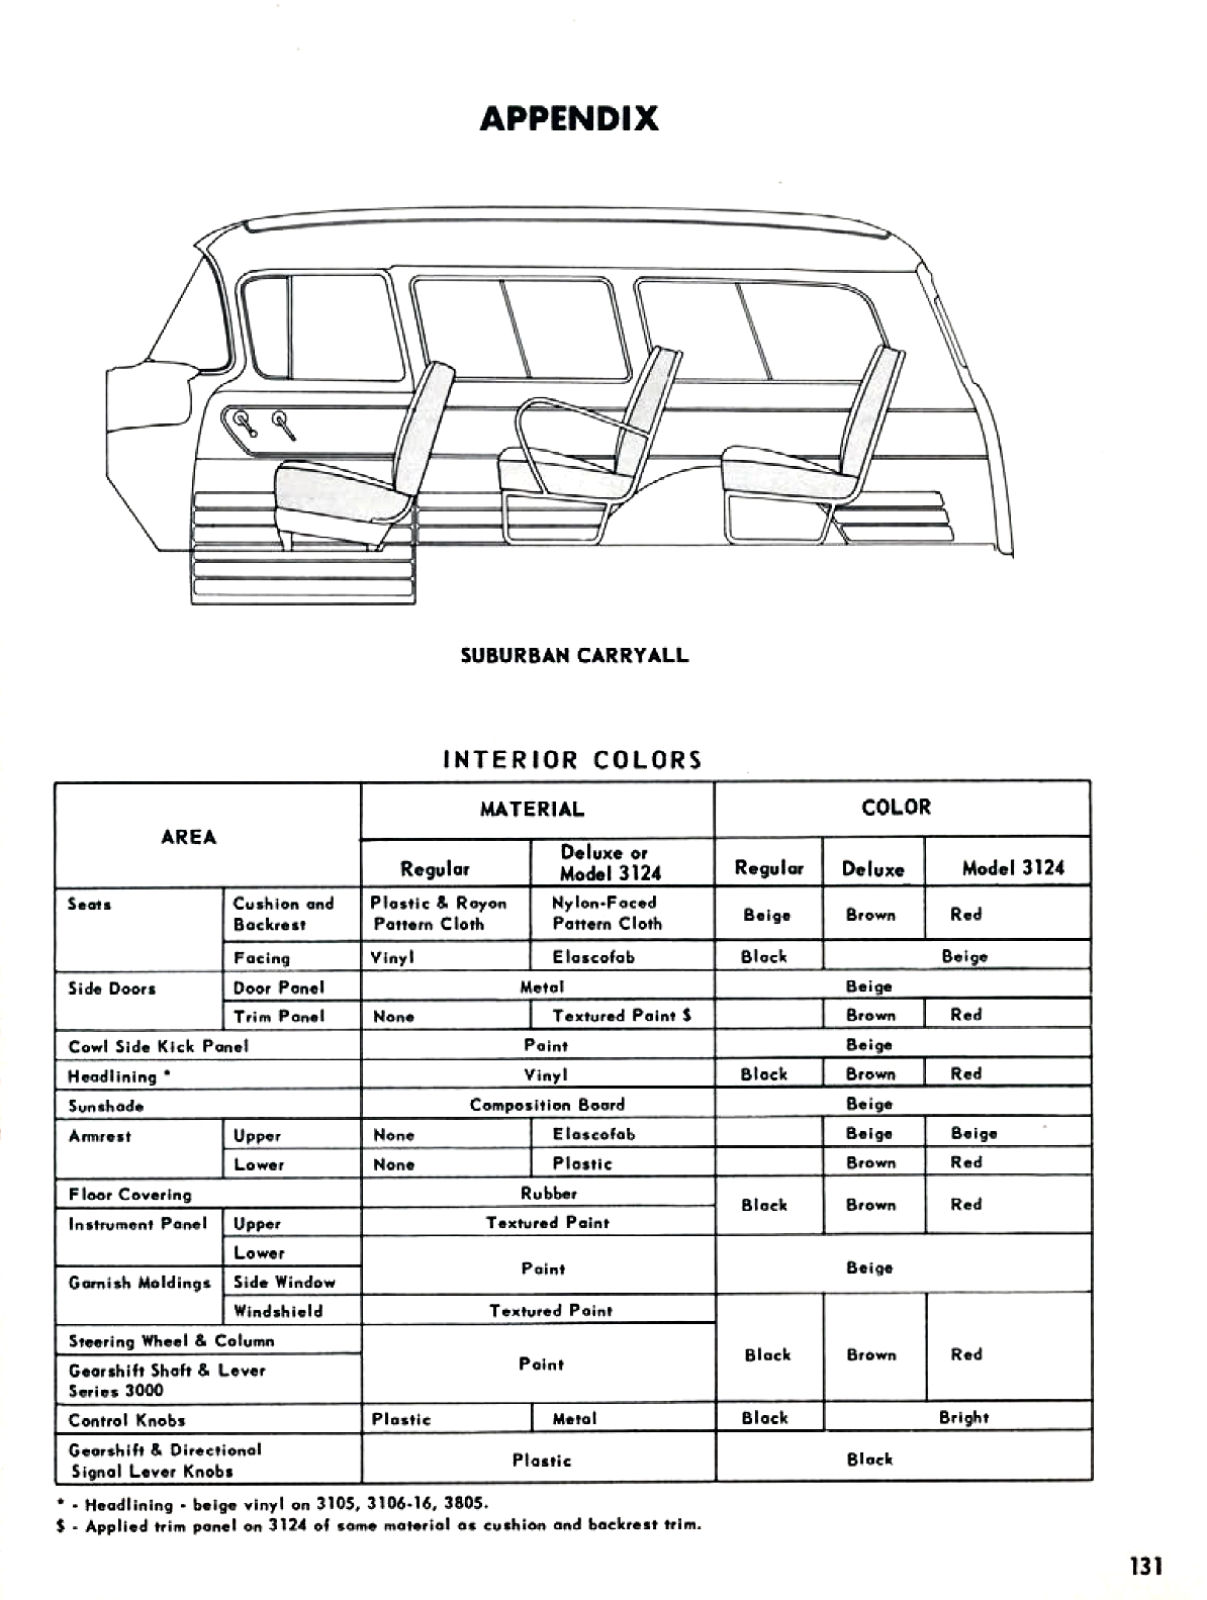 1955_Chevrolet_Truck_Engineering_Features-131